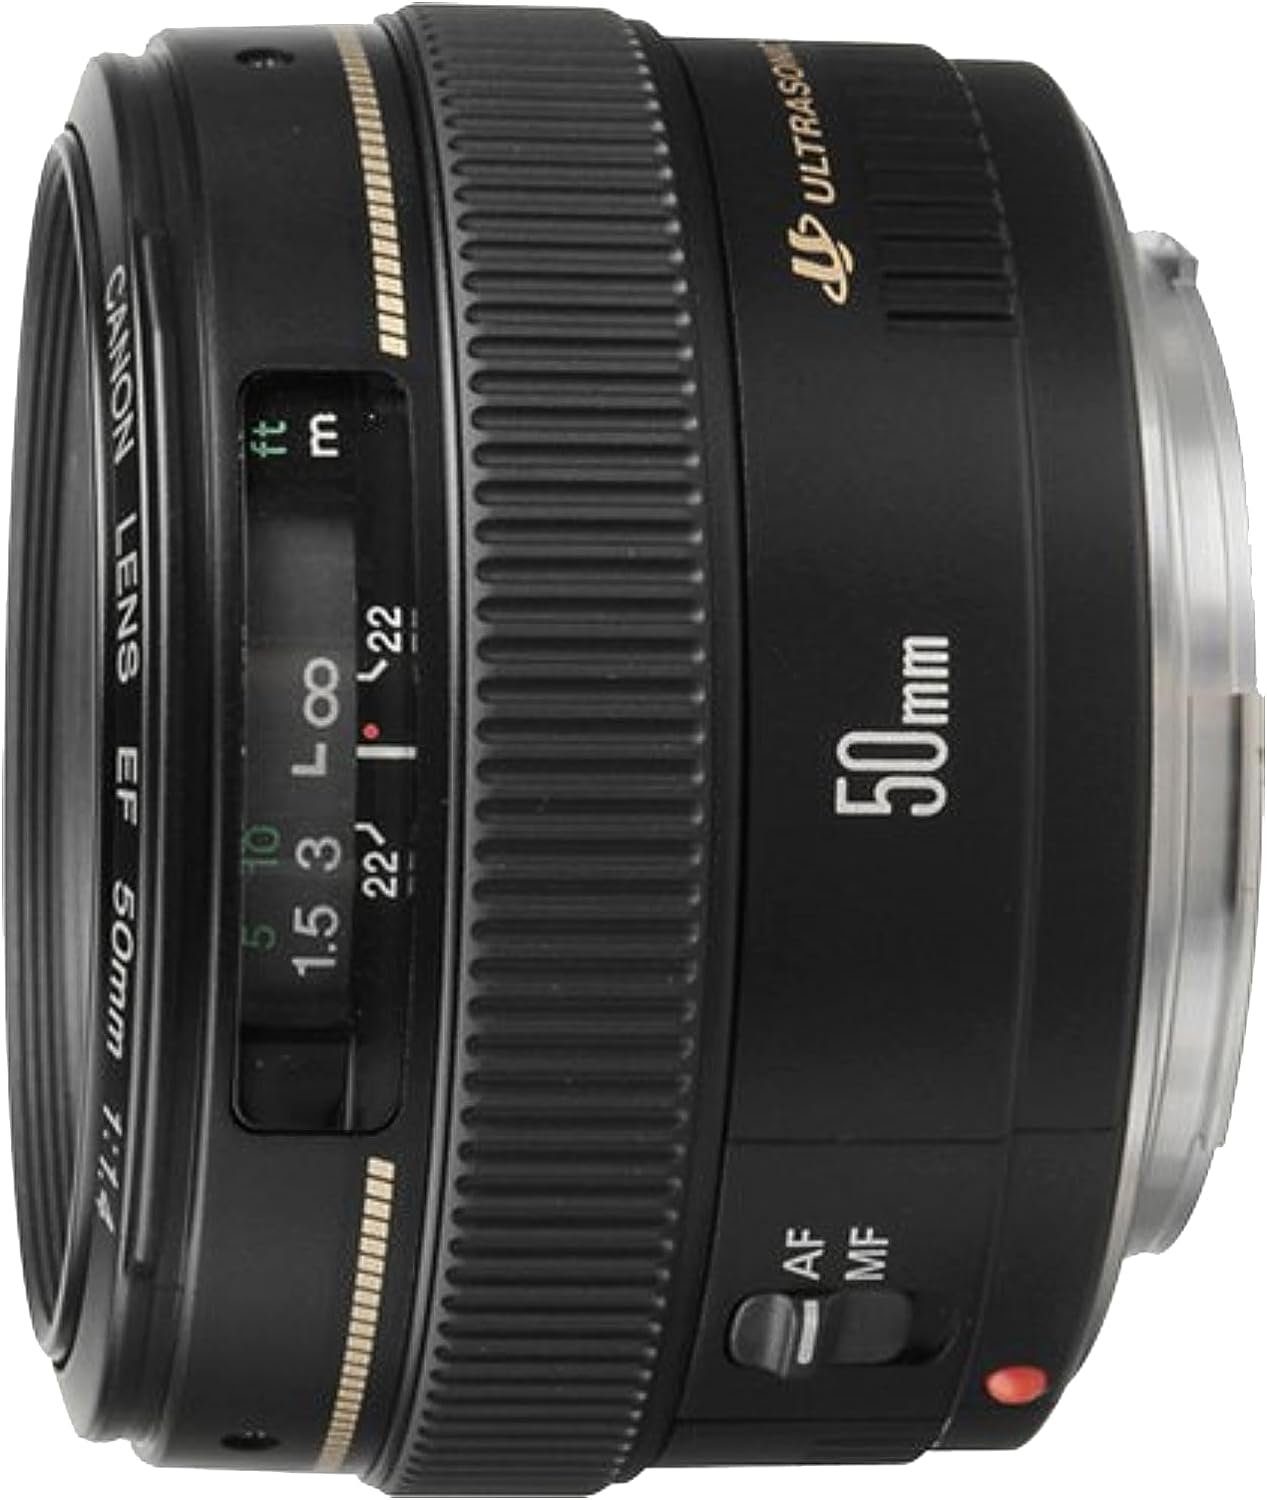 Canon Canon EF 50mm F1.4 USM Standardobjektiv (58mm Filtergewinde) schwarz Festbrennweiteobjektiv